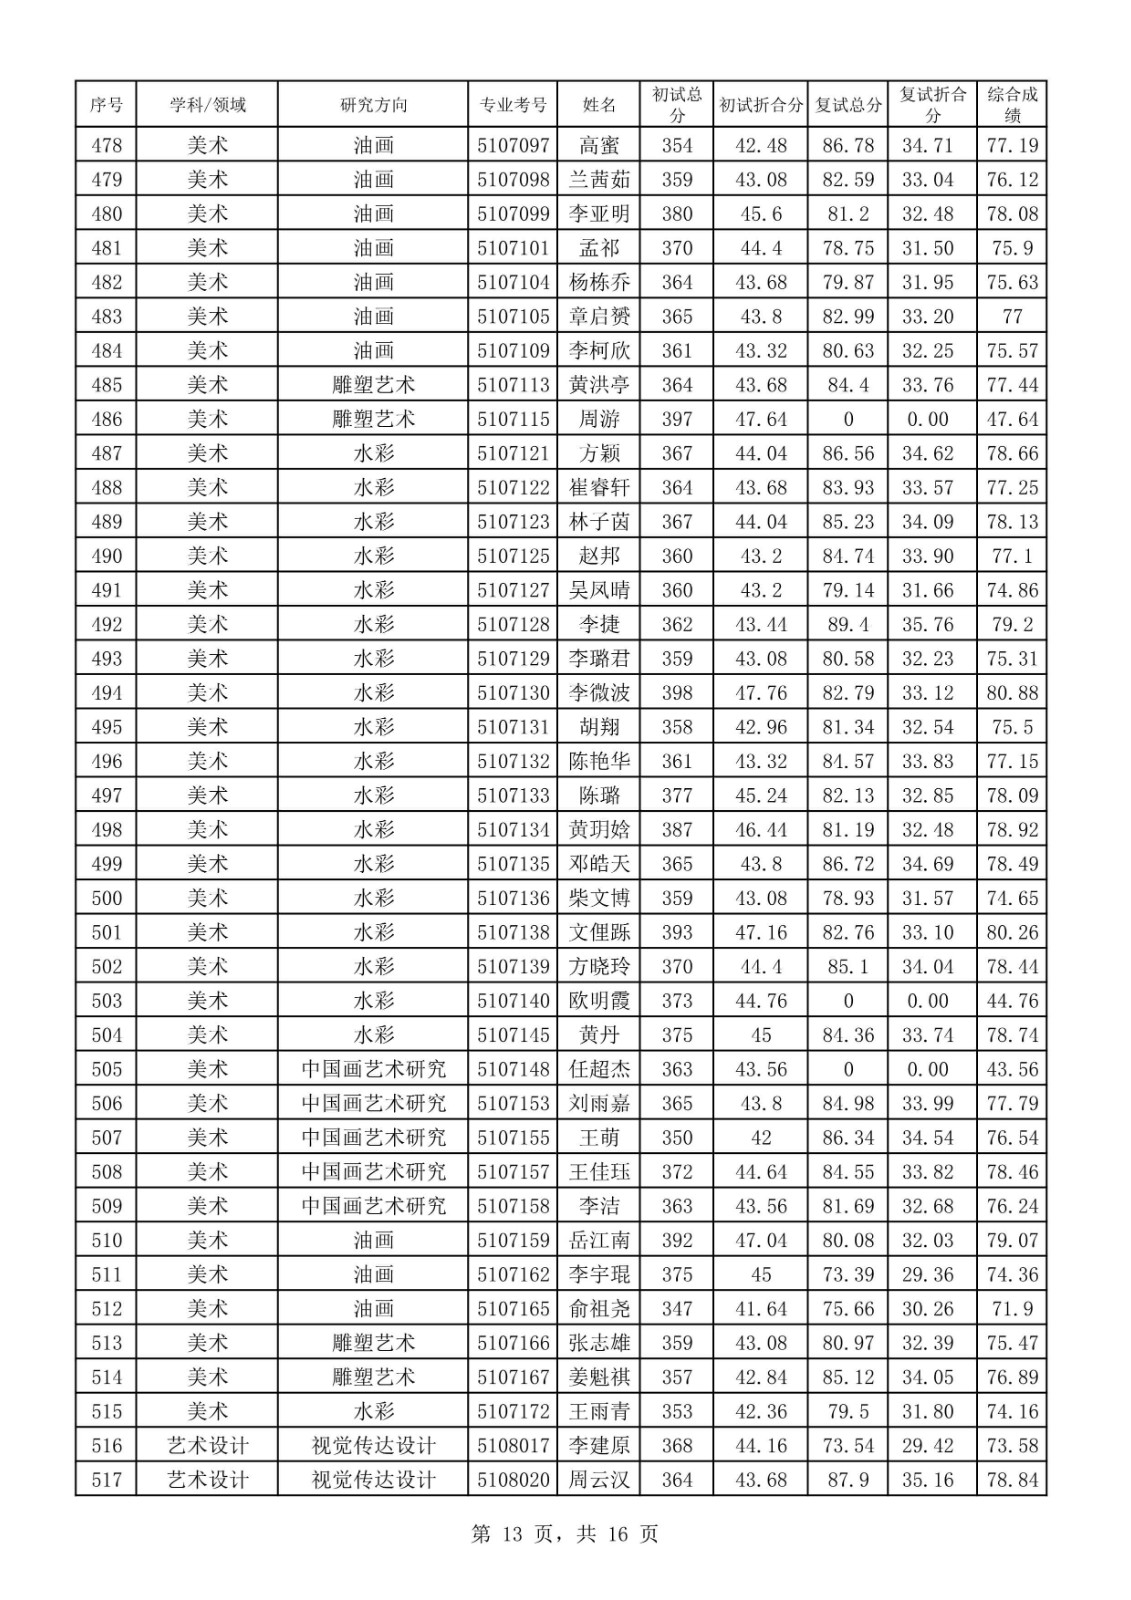 2020年四川音乐学院硕士研究生招生复试成绩表